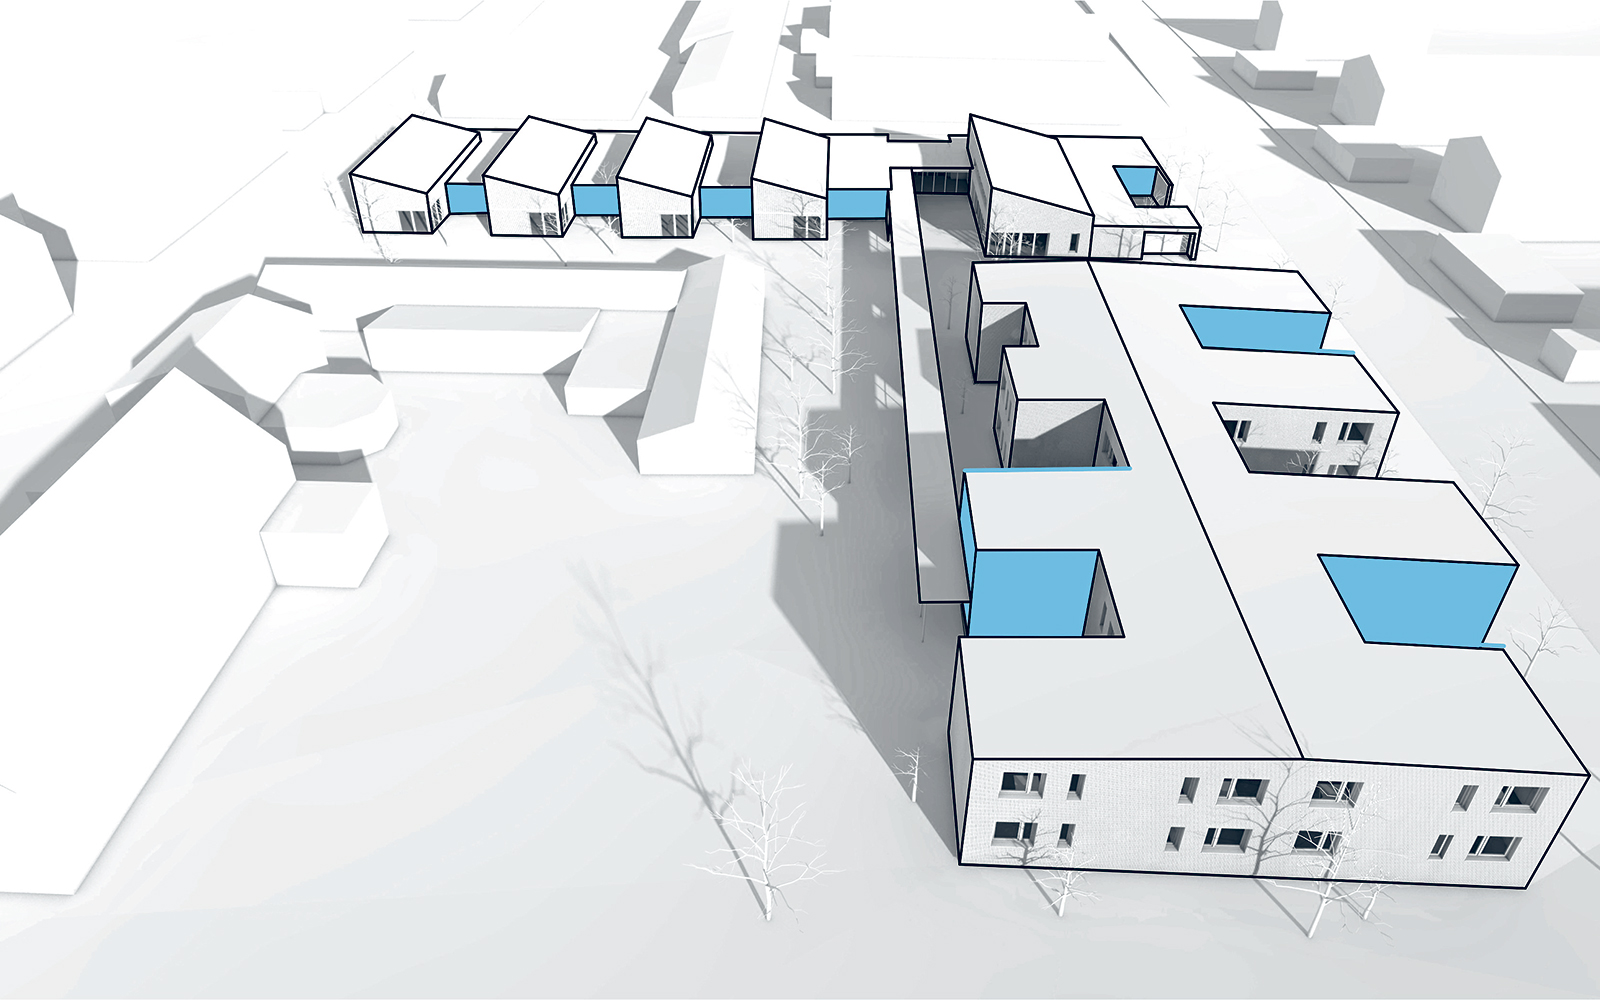 Eine erste virtuelle Skizze von den geplanten neuen Wohnungen.